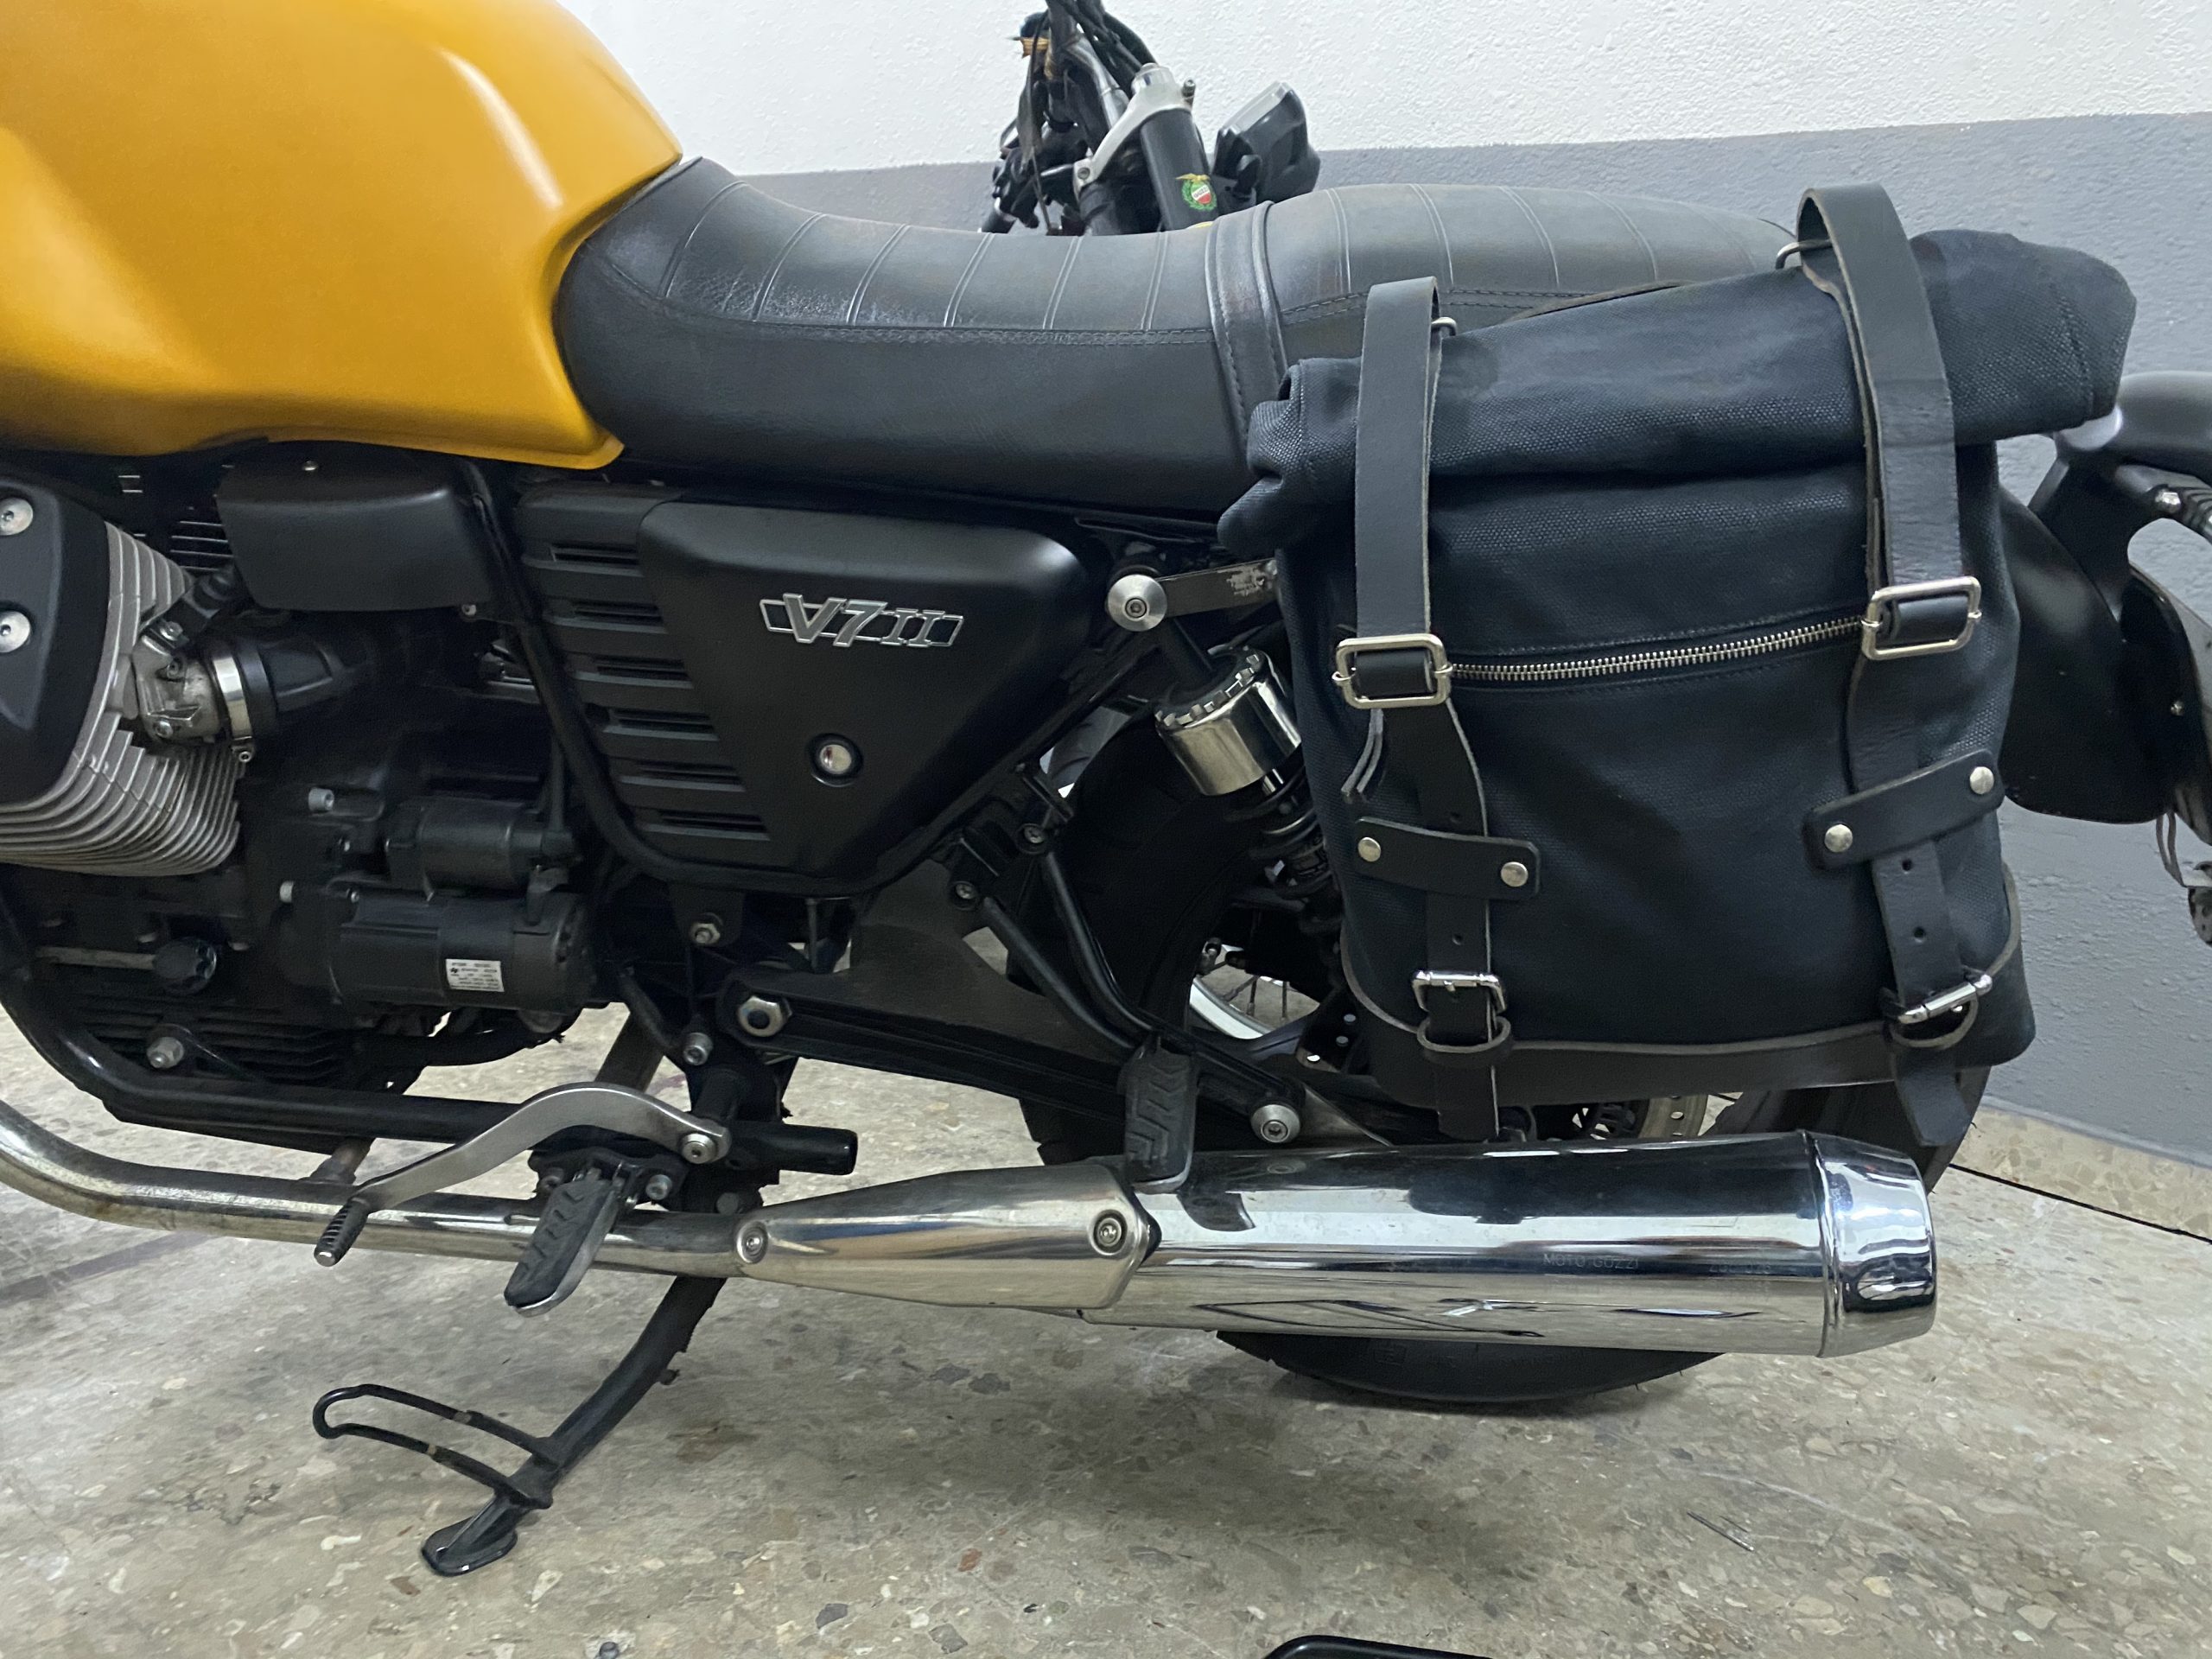 V7 Premium-Motorradzubehör Moto-Guzzi - La - Satteltaschen, und (beidseitig) Black Satin Gepäck Goods Poderosa Satteltaschenhalterung